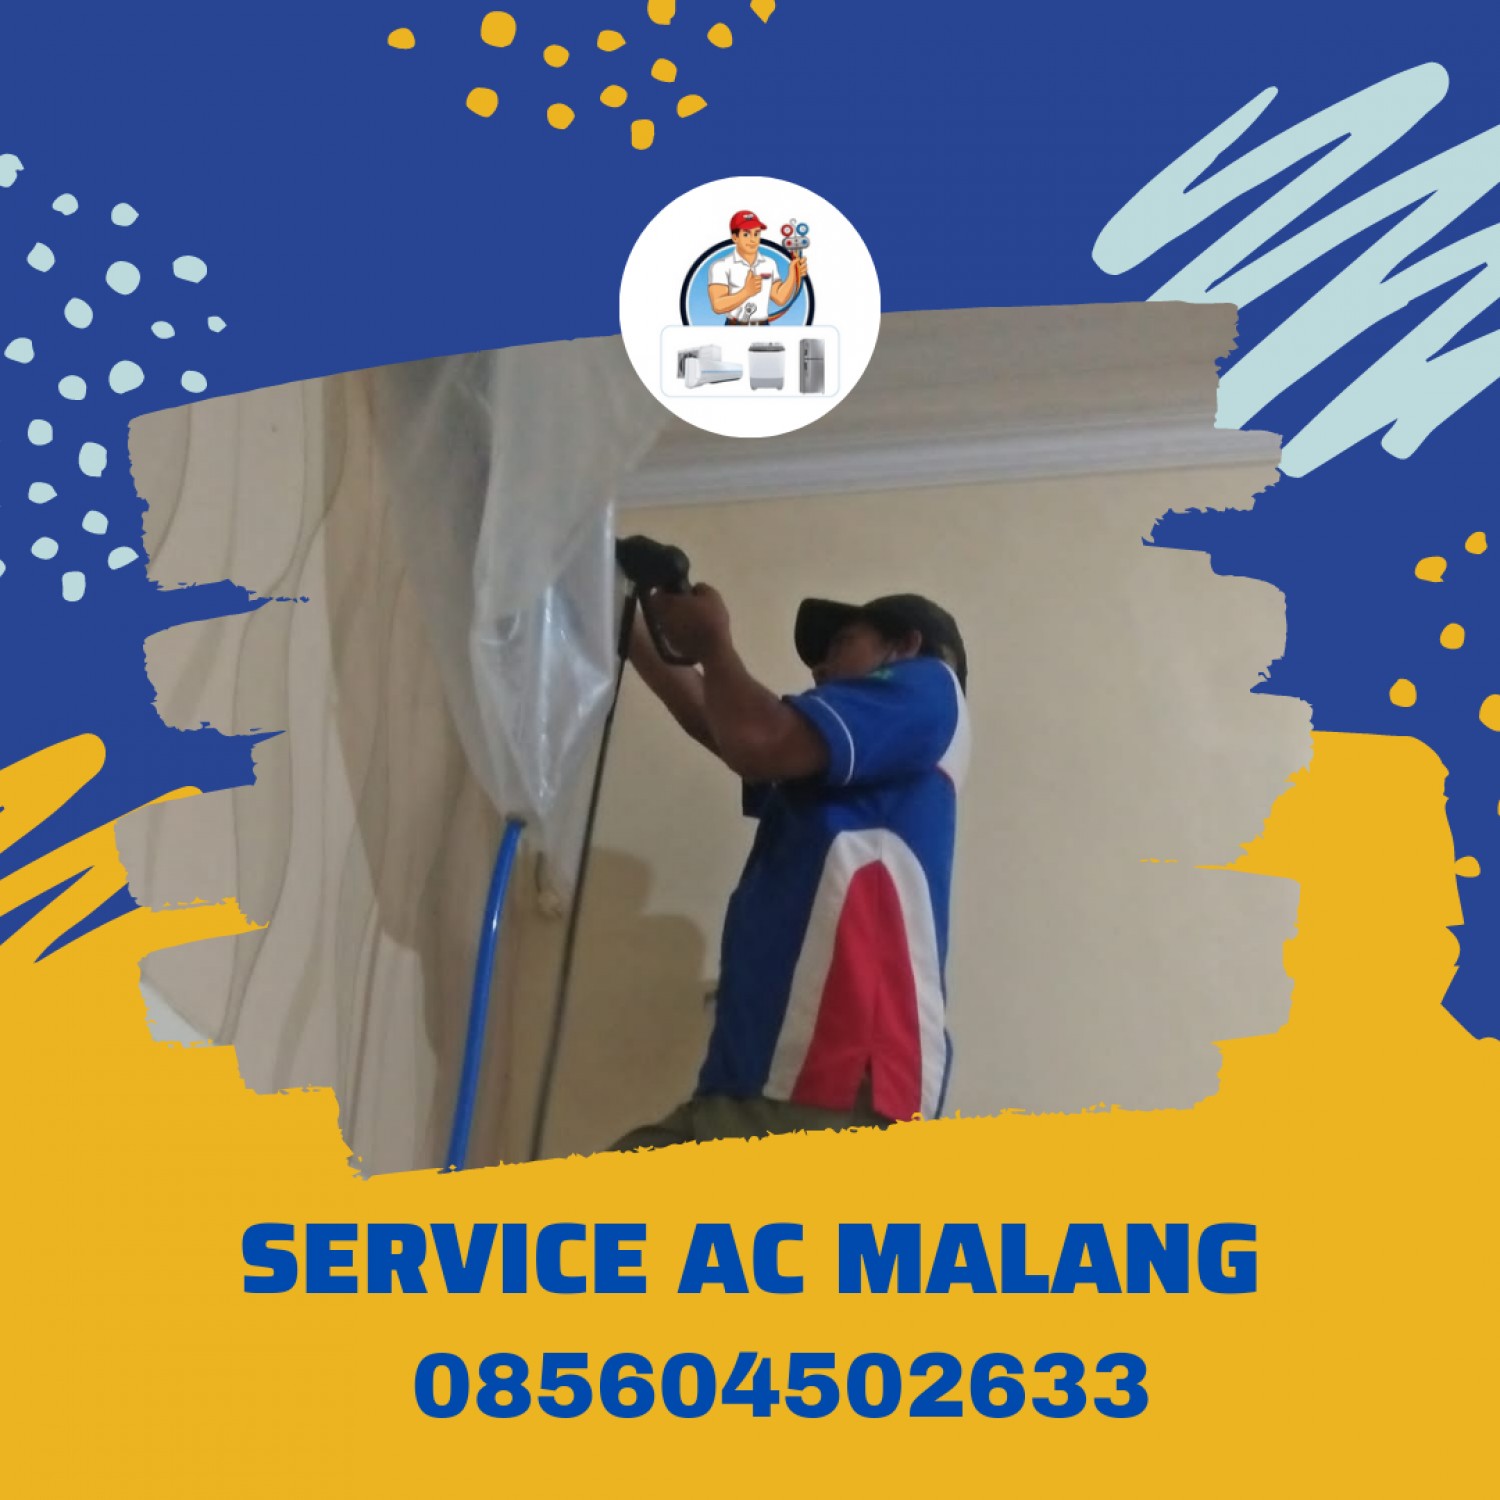 Service AC Wonosari Malang